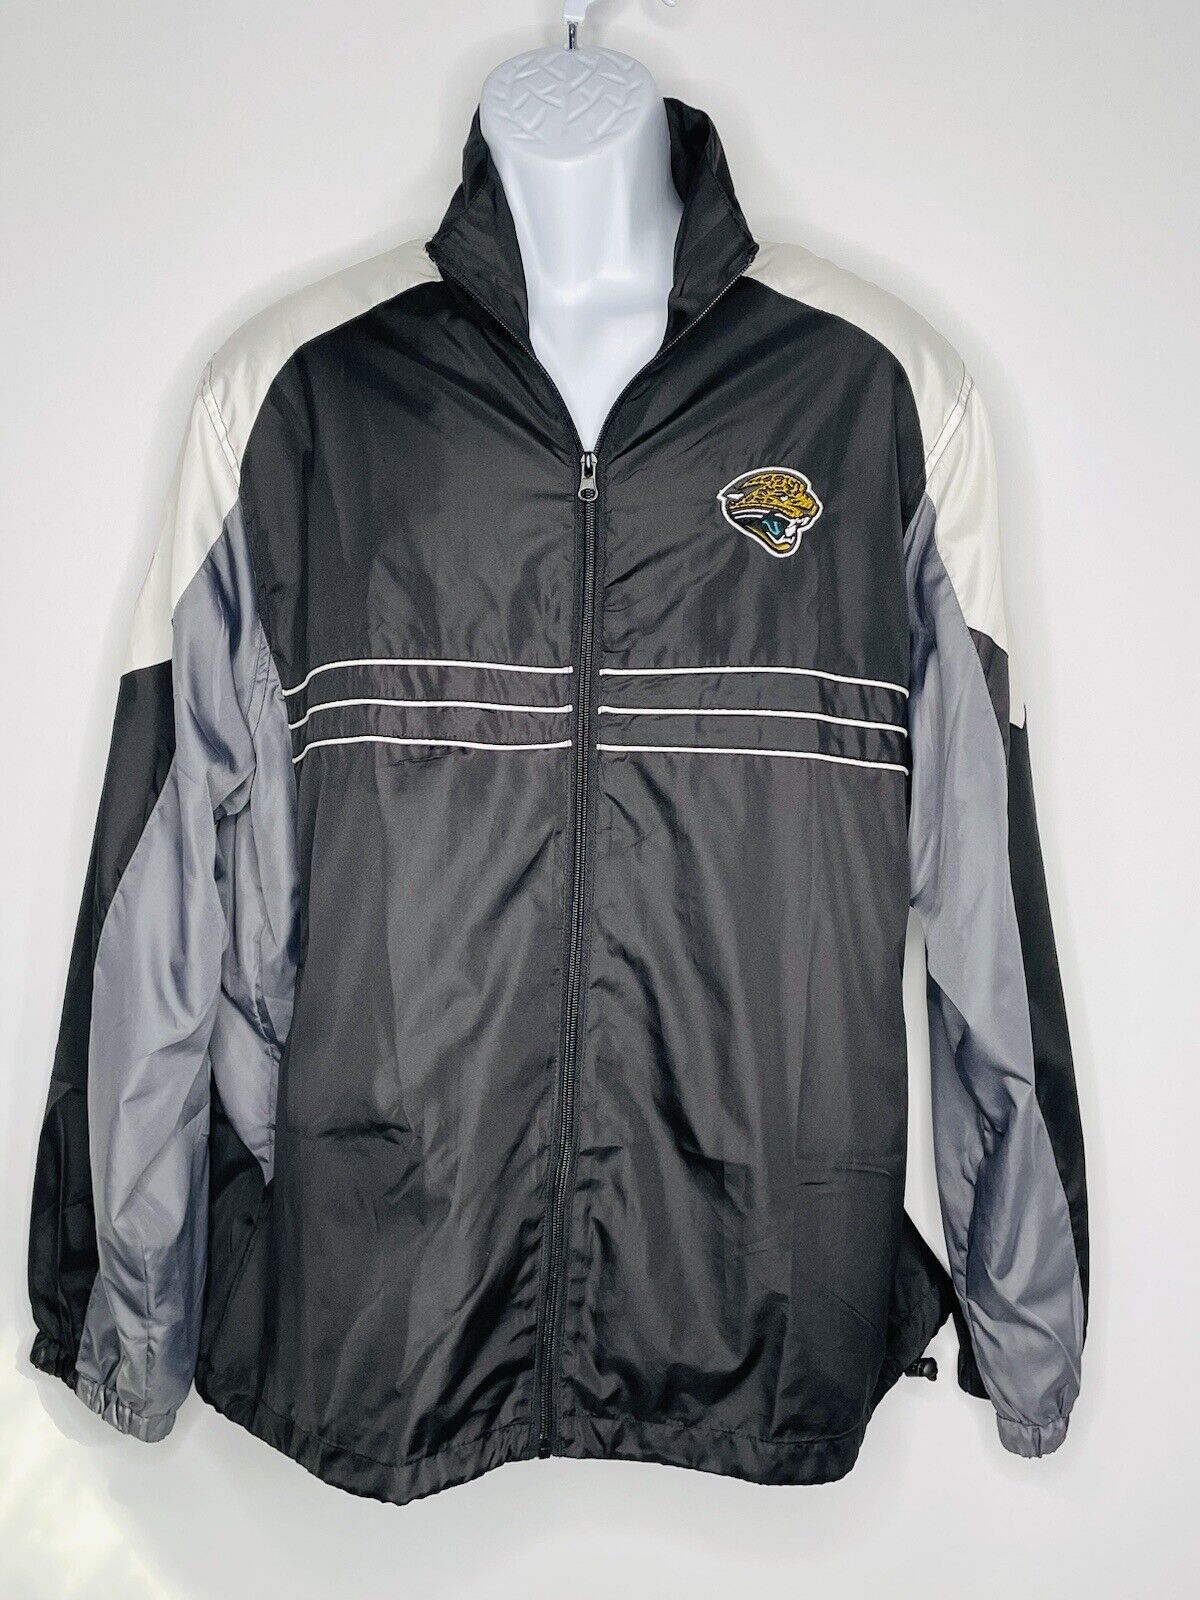 Primary image for Jacksonville Jaguars NFL Team Apparel Reebok Sports Illustrated Jacket Size Lg